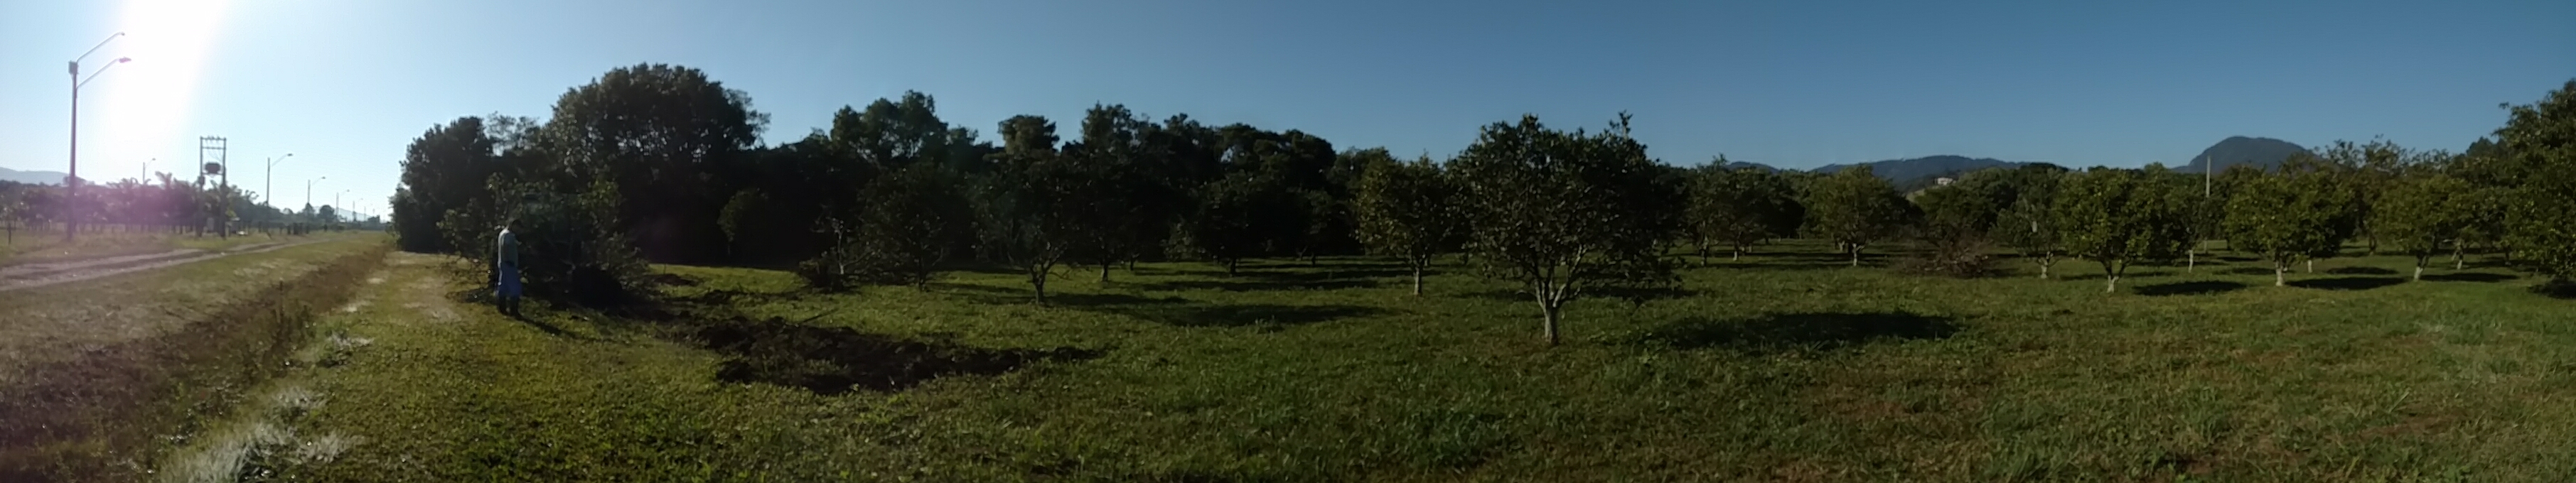 20170726 Fazenda Fruticultura renovação pomar citrus arranquio 006.jpg